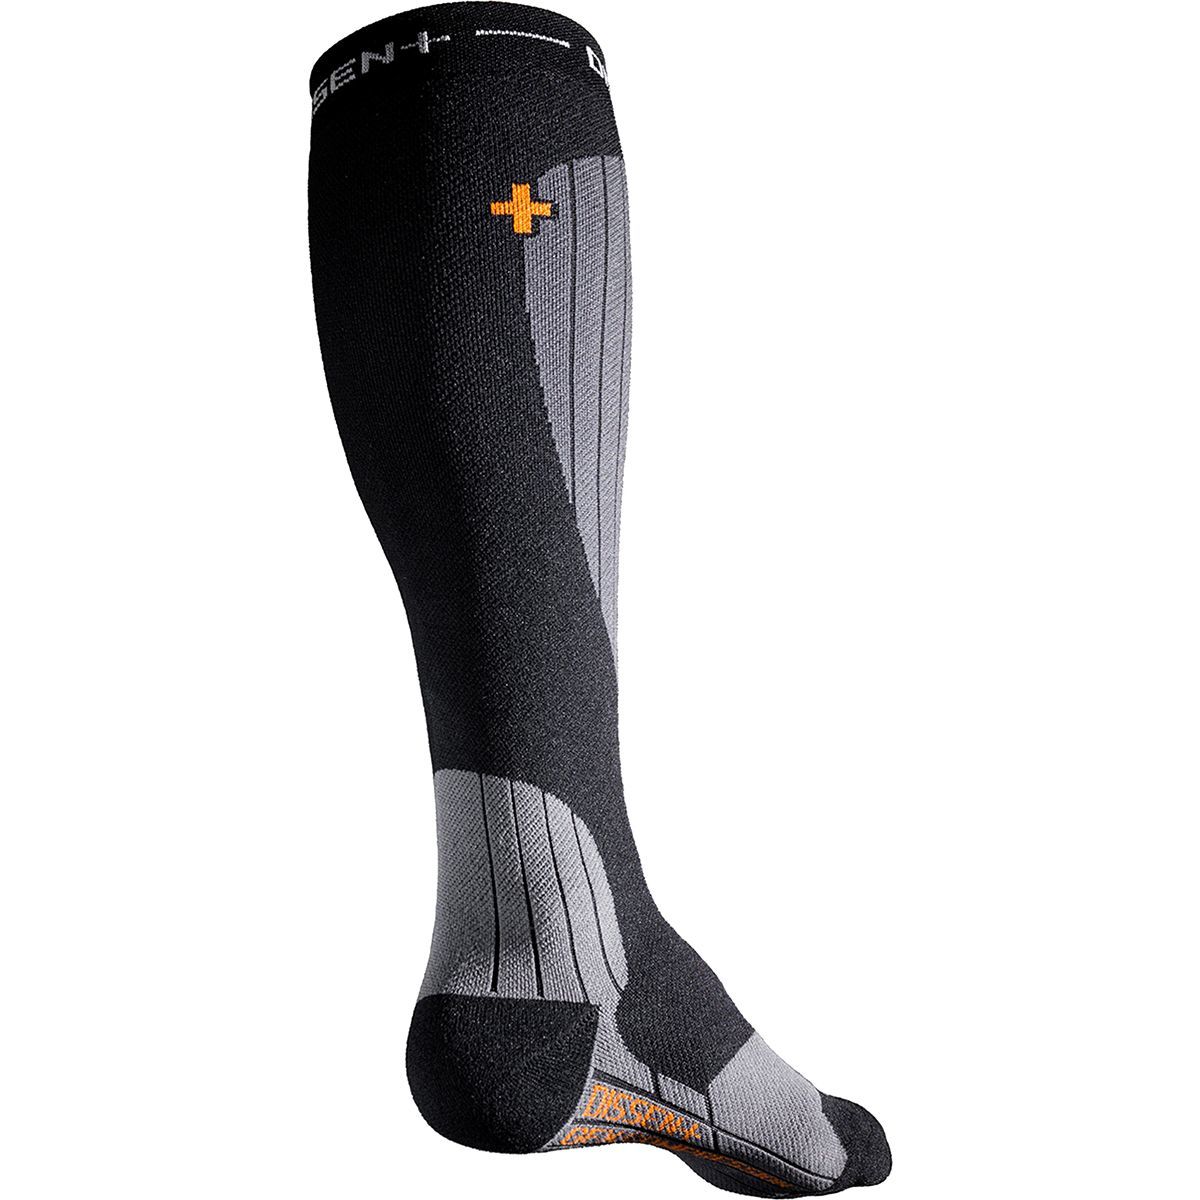 Dissent Ski Genuflex Compression Sock - Men's